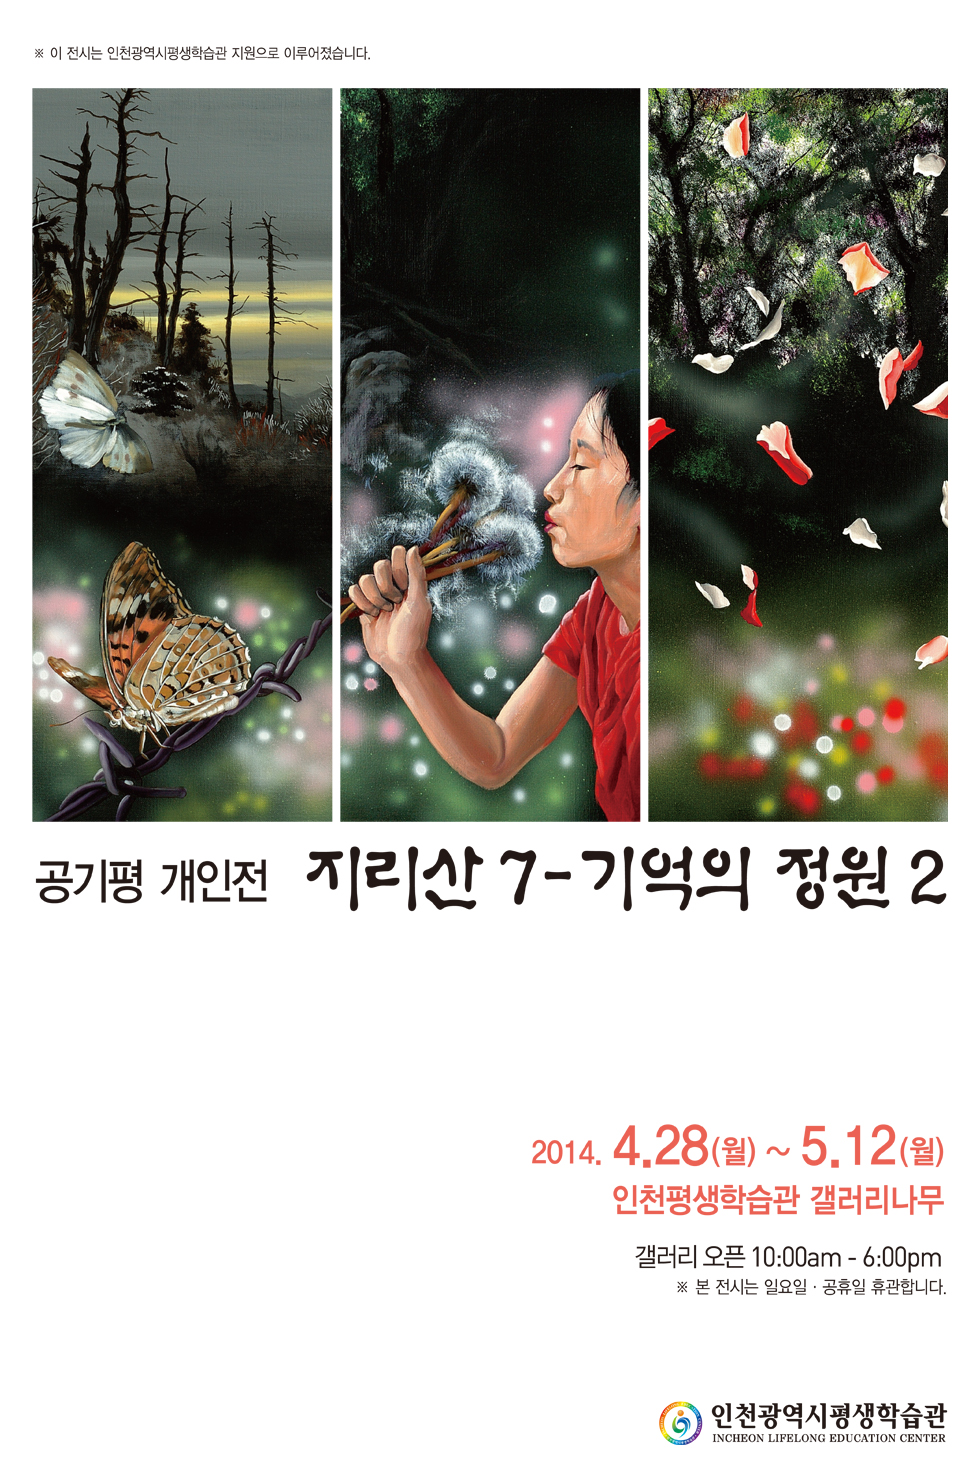 [2014 기획(공모)전시] 공기평, 지리산 7 - 기억의 정원展 관련 포스터 - 자세한 내용은 본문참조